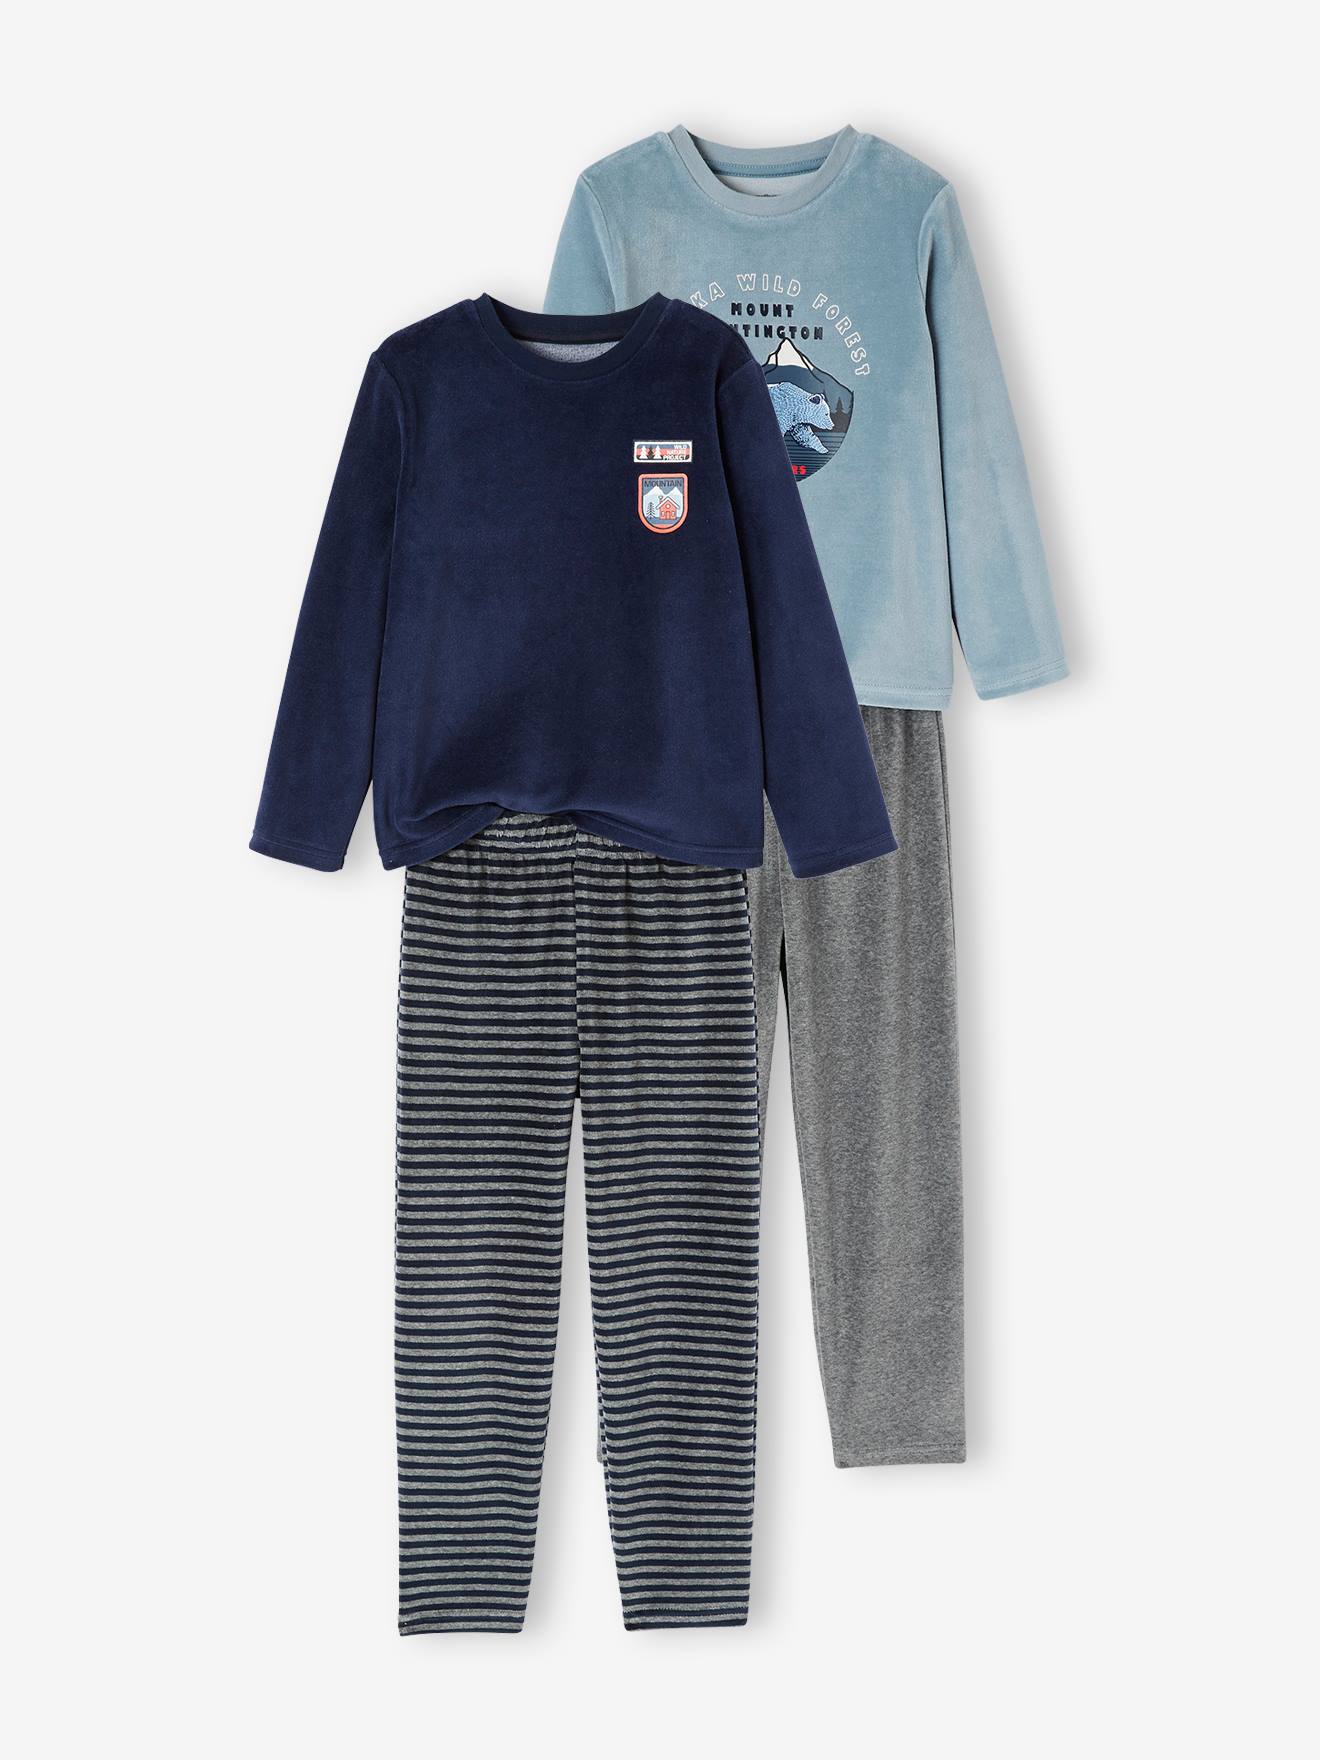 Set van 2 "natuur" fluwelen pyjama's voor jongens set blauw en grijs